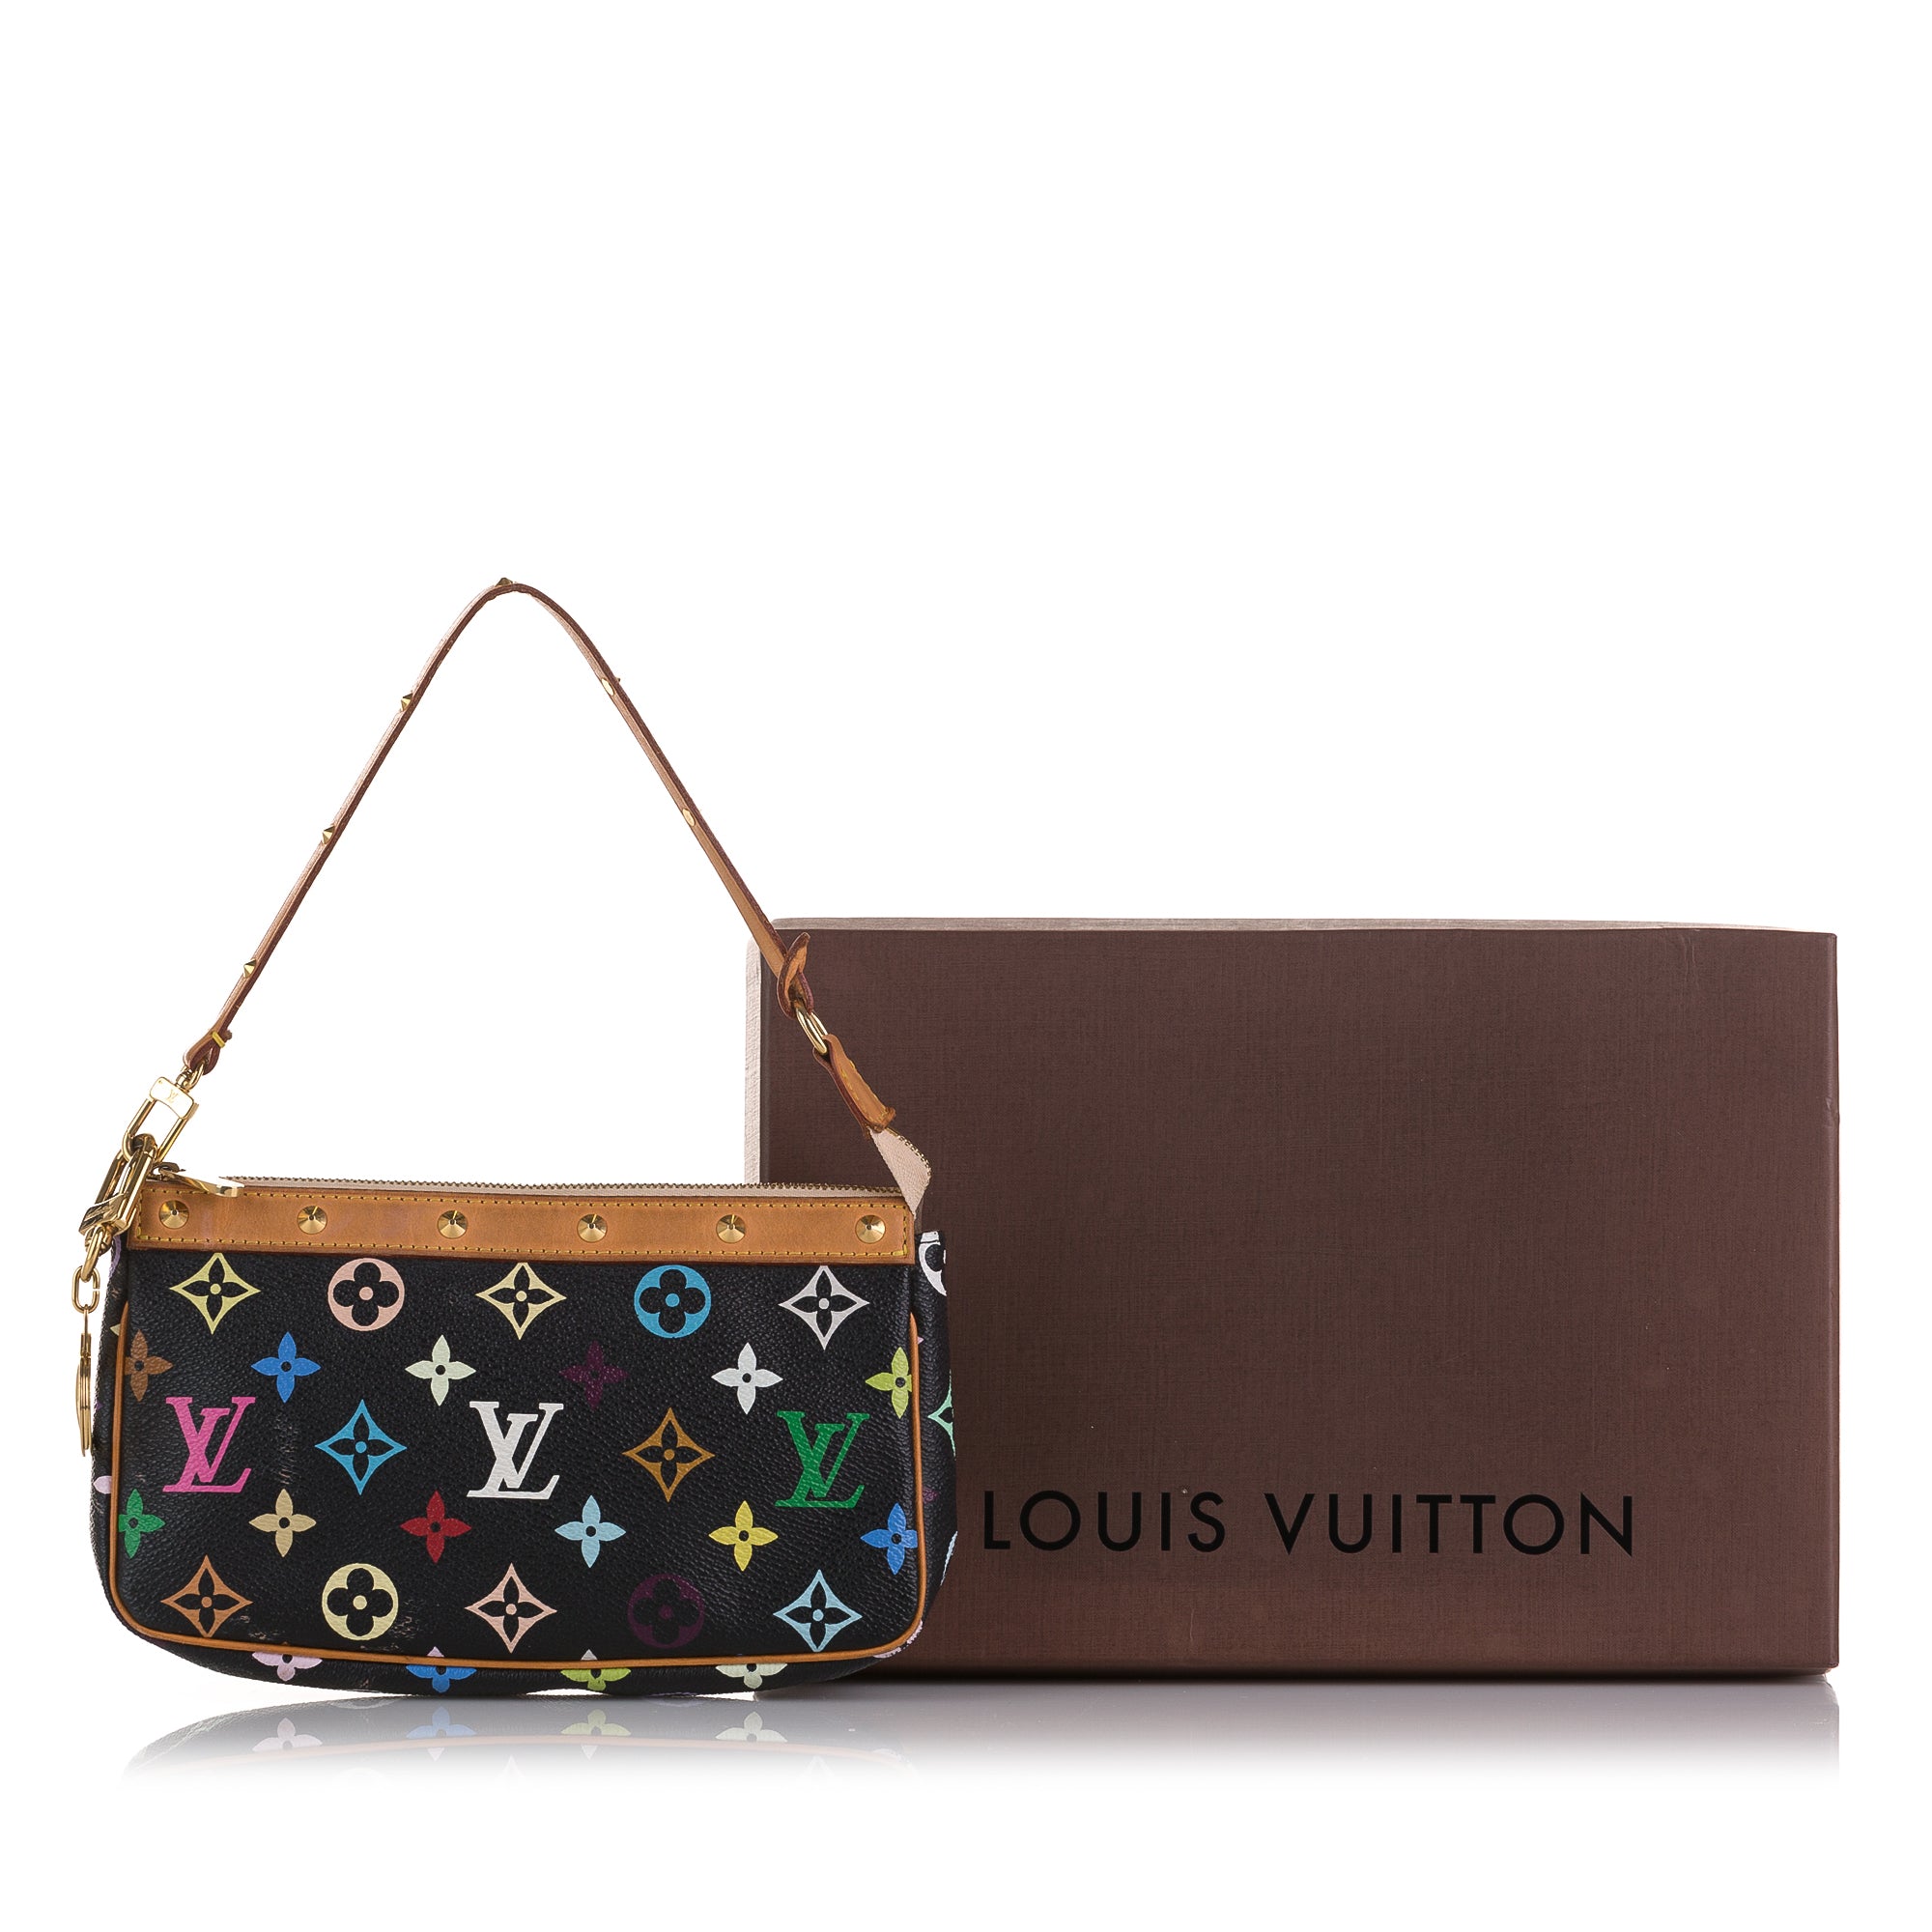 Porte-habits Louis Vuitton en toile monogram marron et cuir naturel.